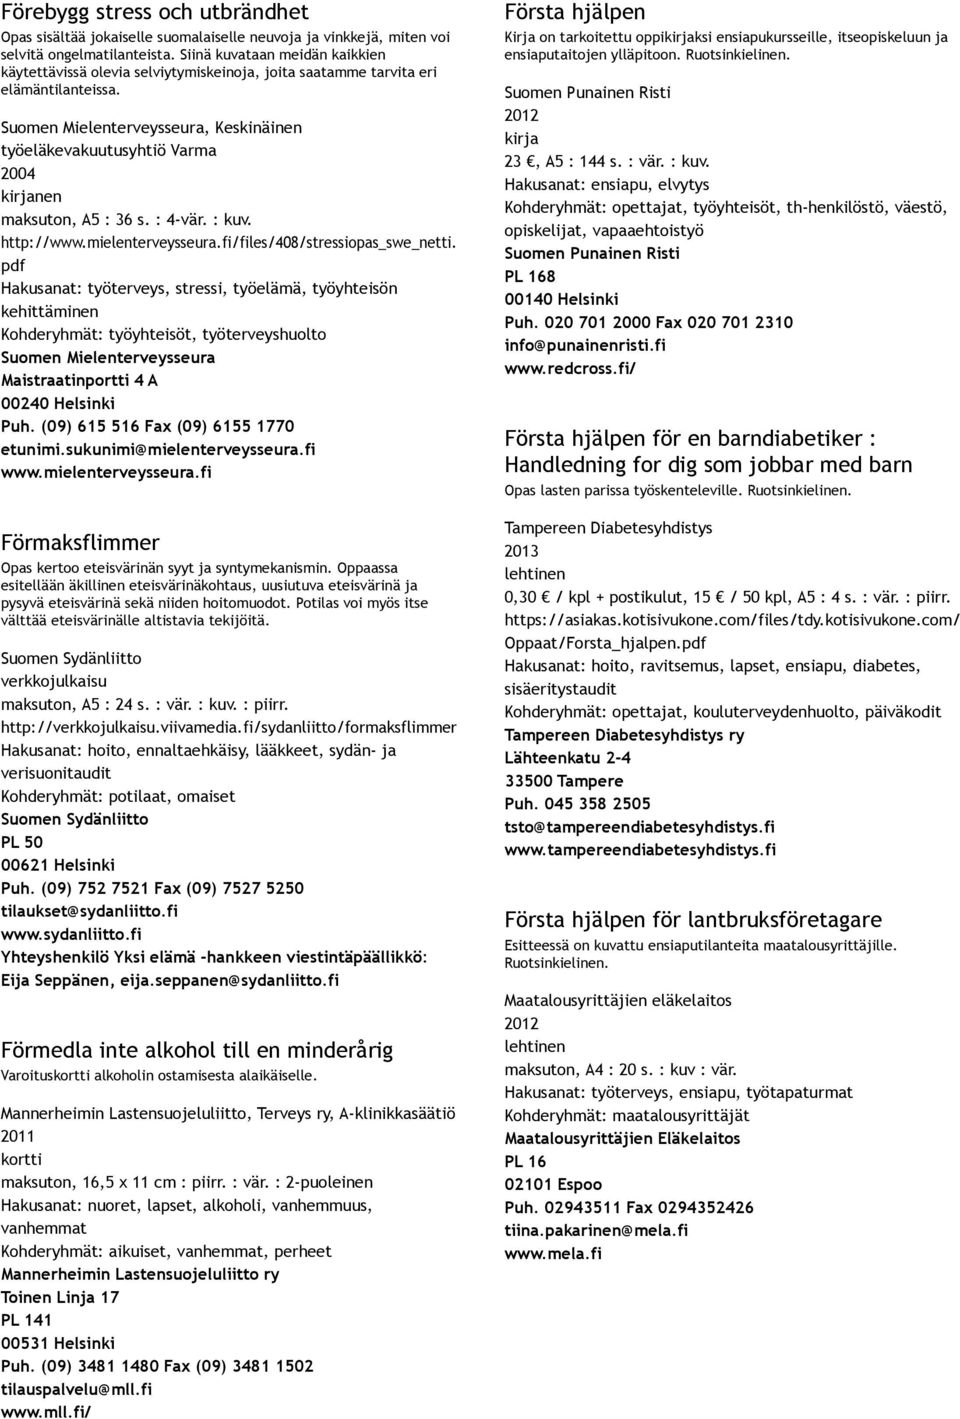 Suomen Mielenterveysseura, Keskinäinen työeläkevakuutusyhtiö Varma 2004 kirjanen maksuton, A5 : 36 s. : 4 vär. : kuv. http://www.mielenterveysseura.fi/files/408/stressiopas_swe_netti.